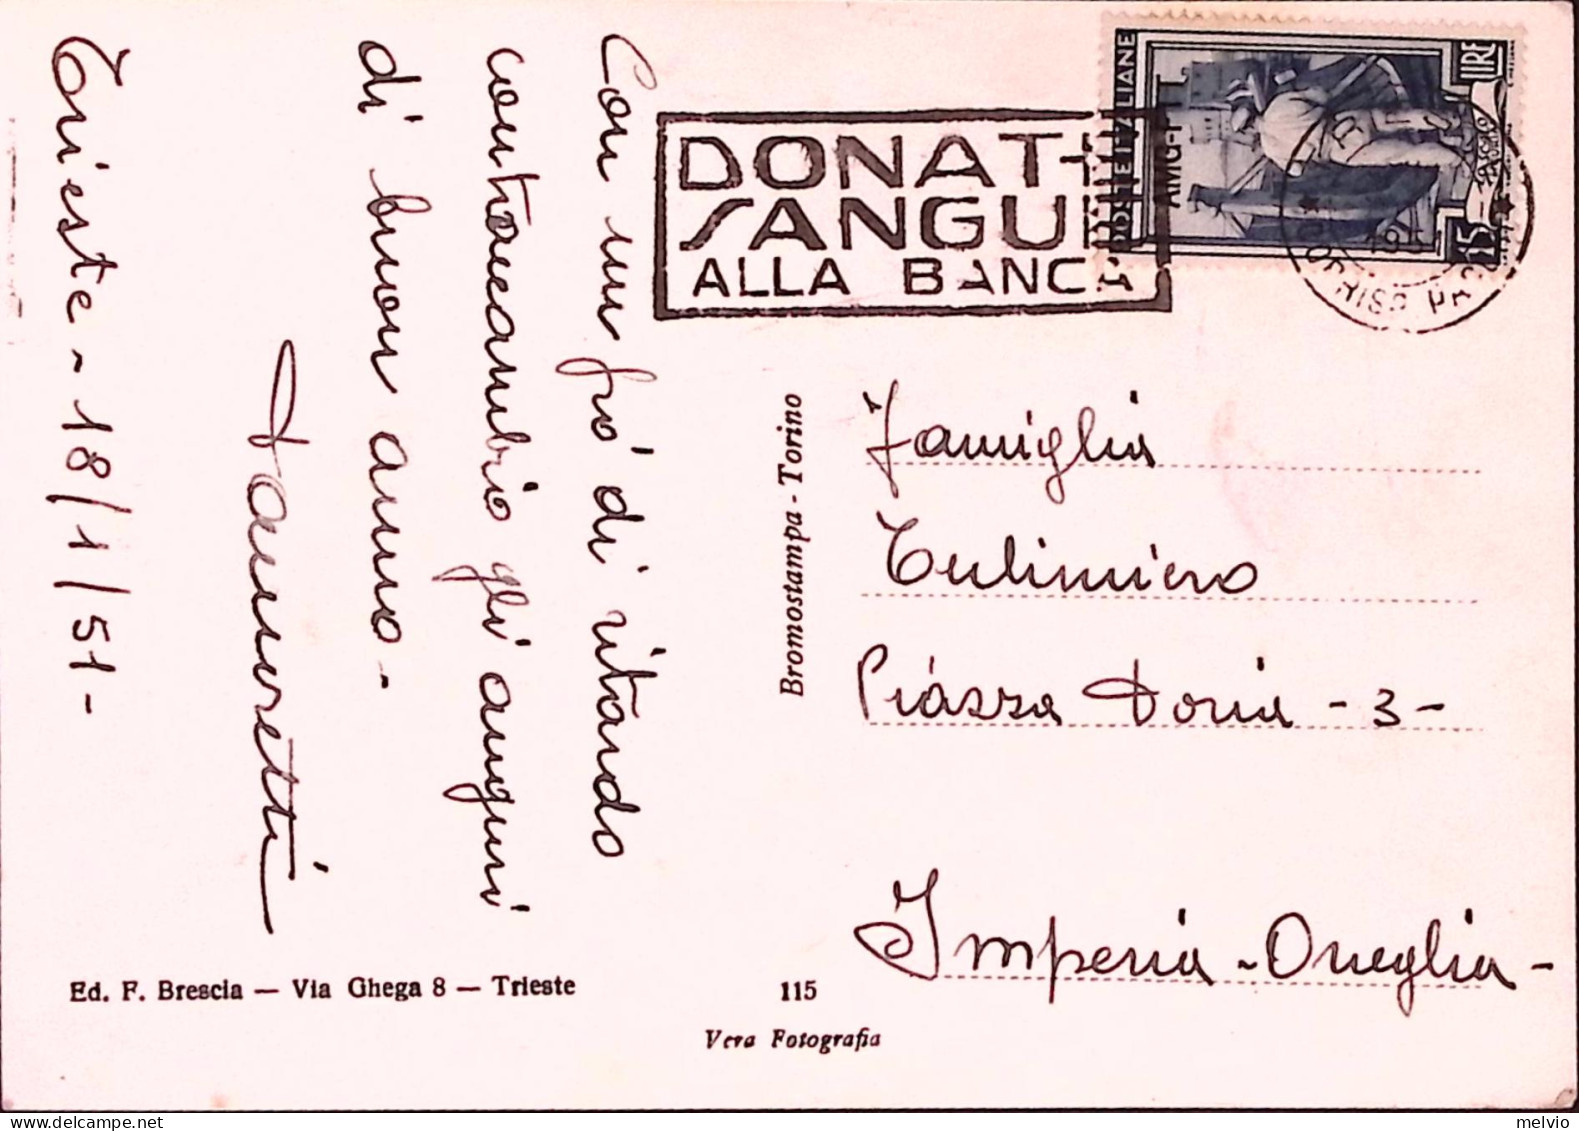 1951-TRIESTE AMG-FTT Targhetta DONATE SANGUE ALLA BANCA (18.1) - Trieste